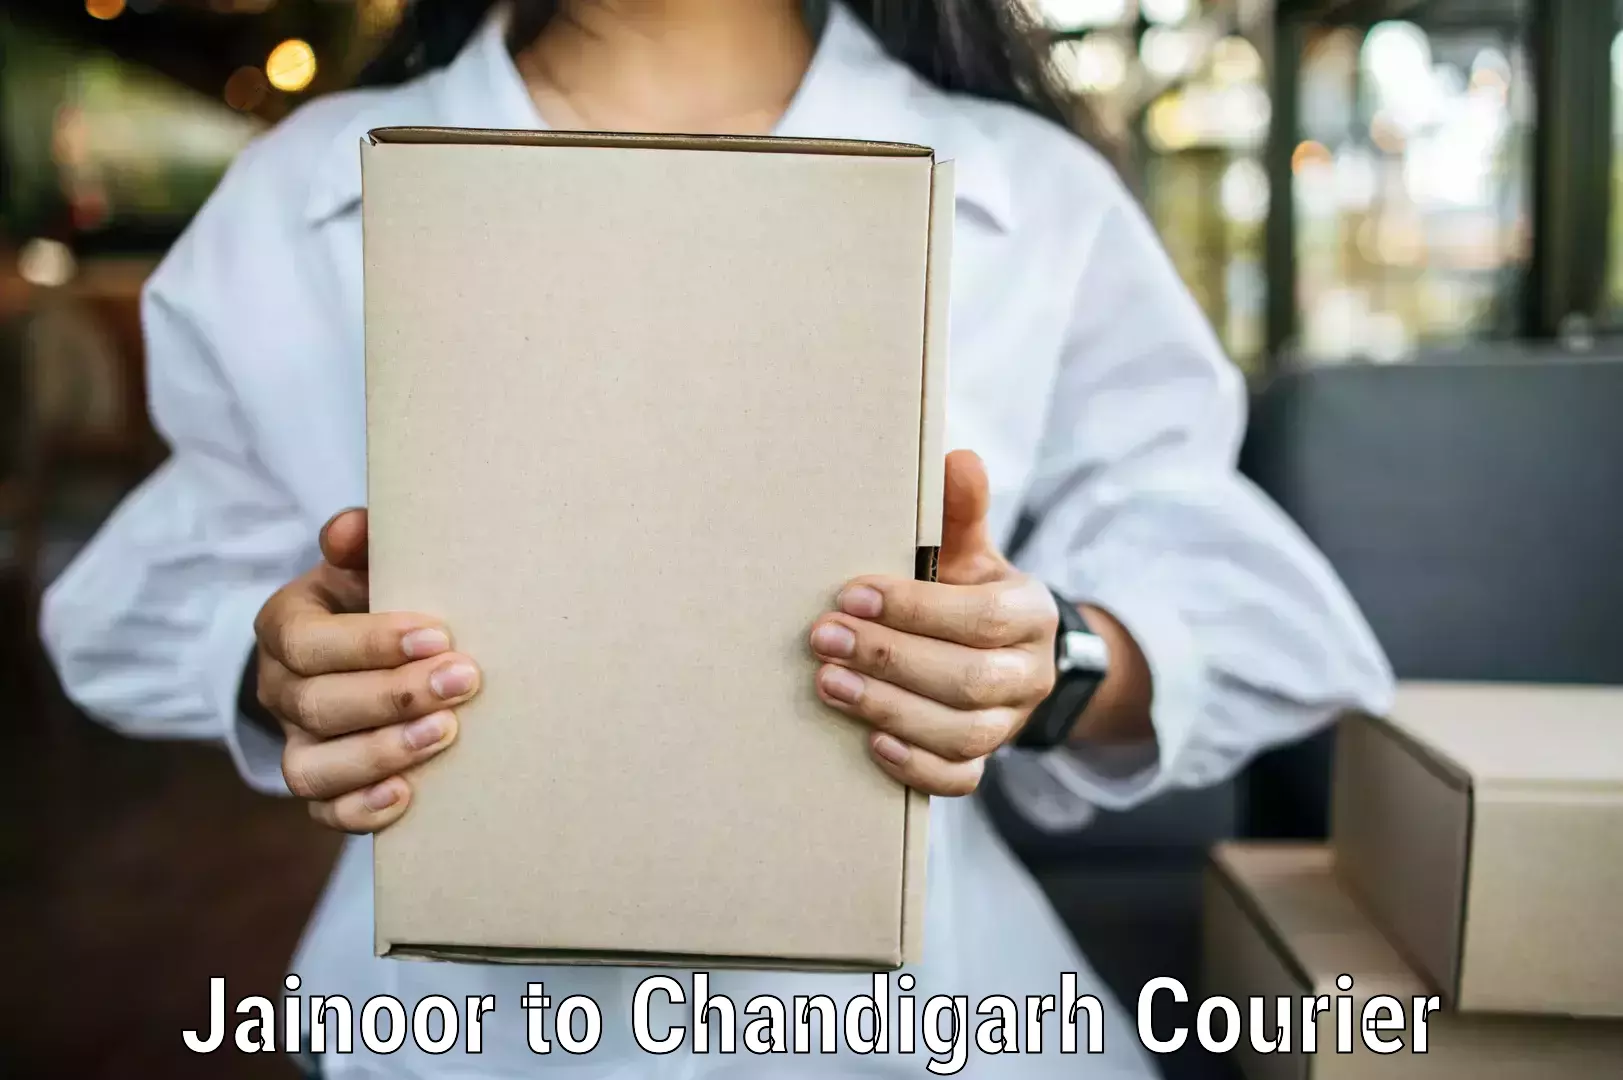 Expedited shipping solutions Jainoor to Chandigarh